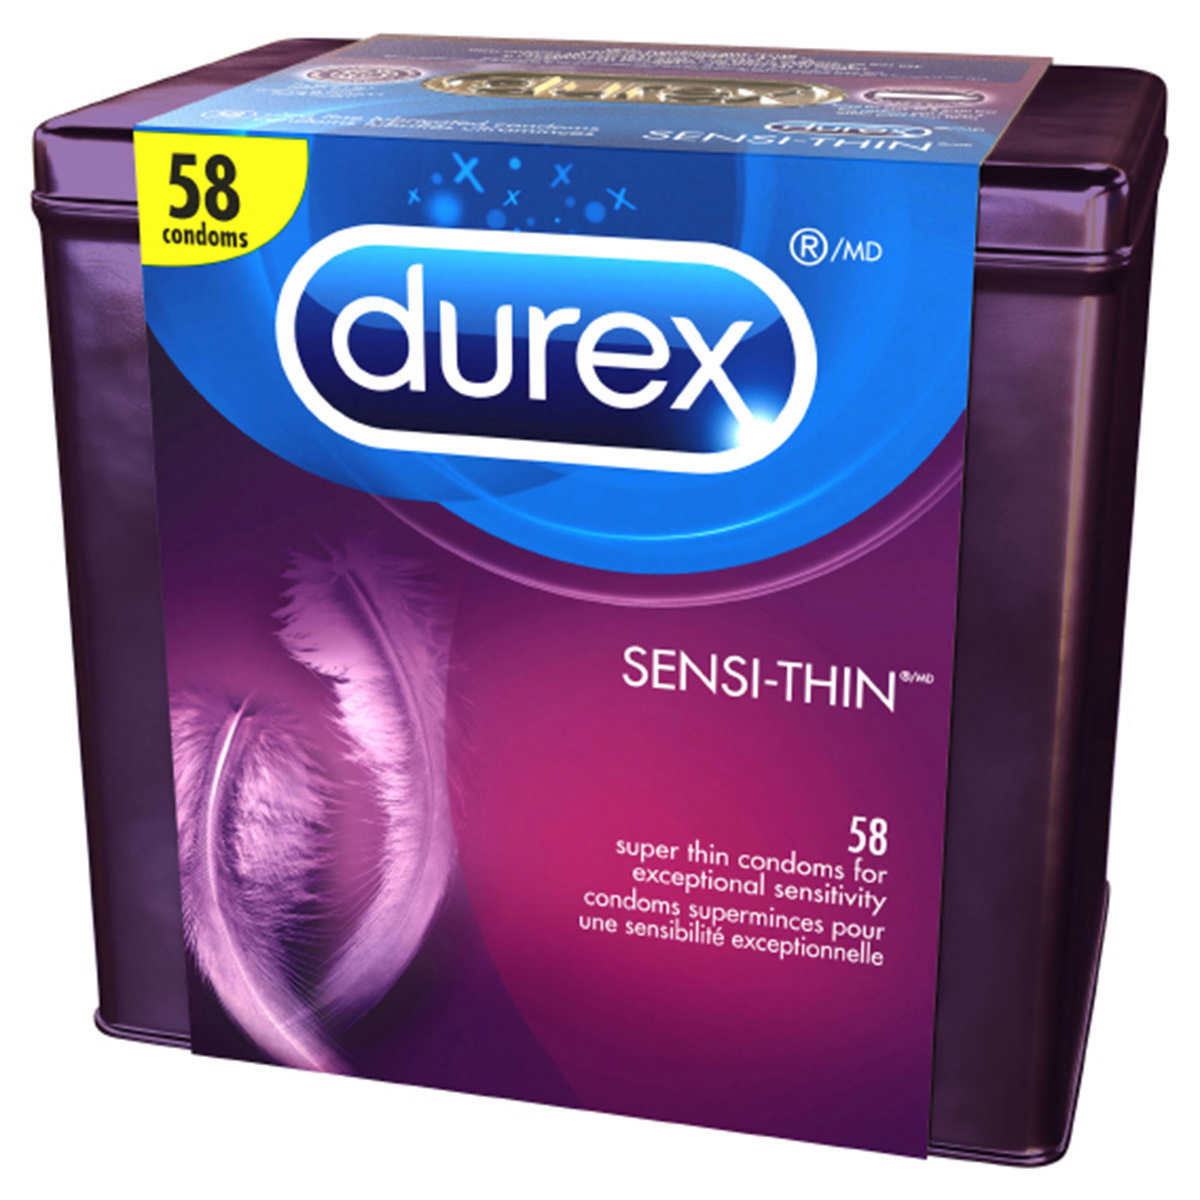 Durex Sensi-thin Condoms 58 pack